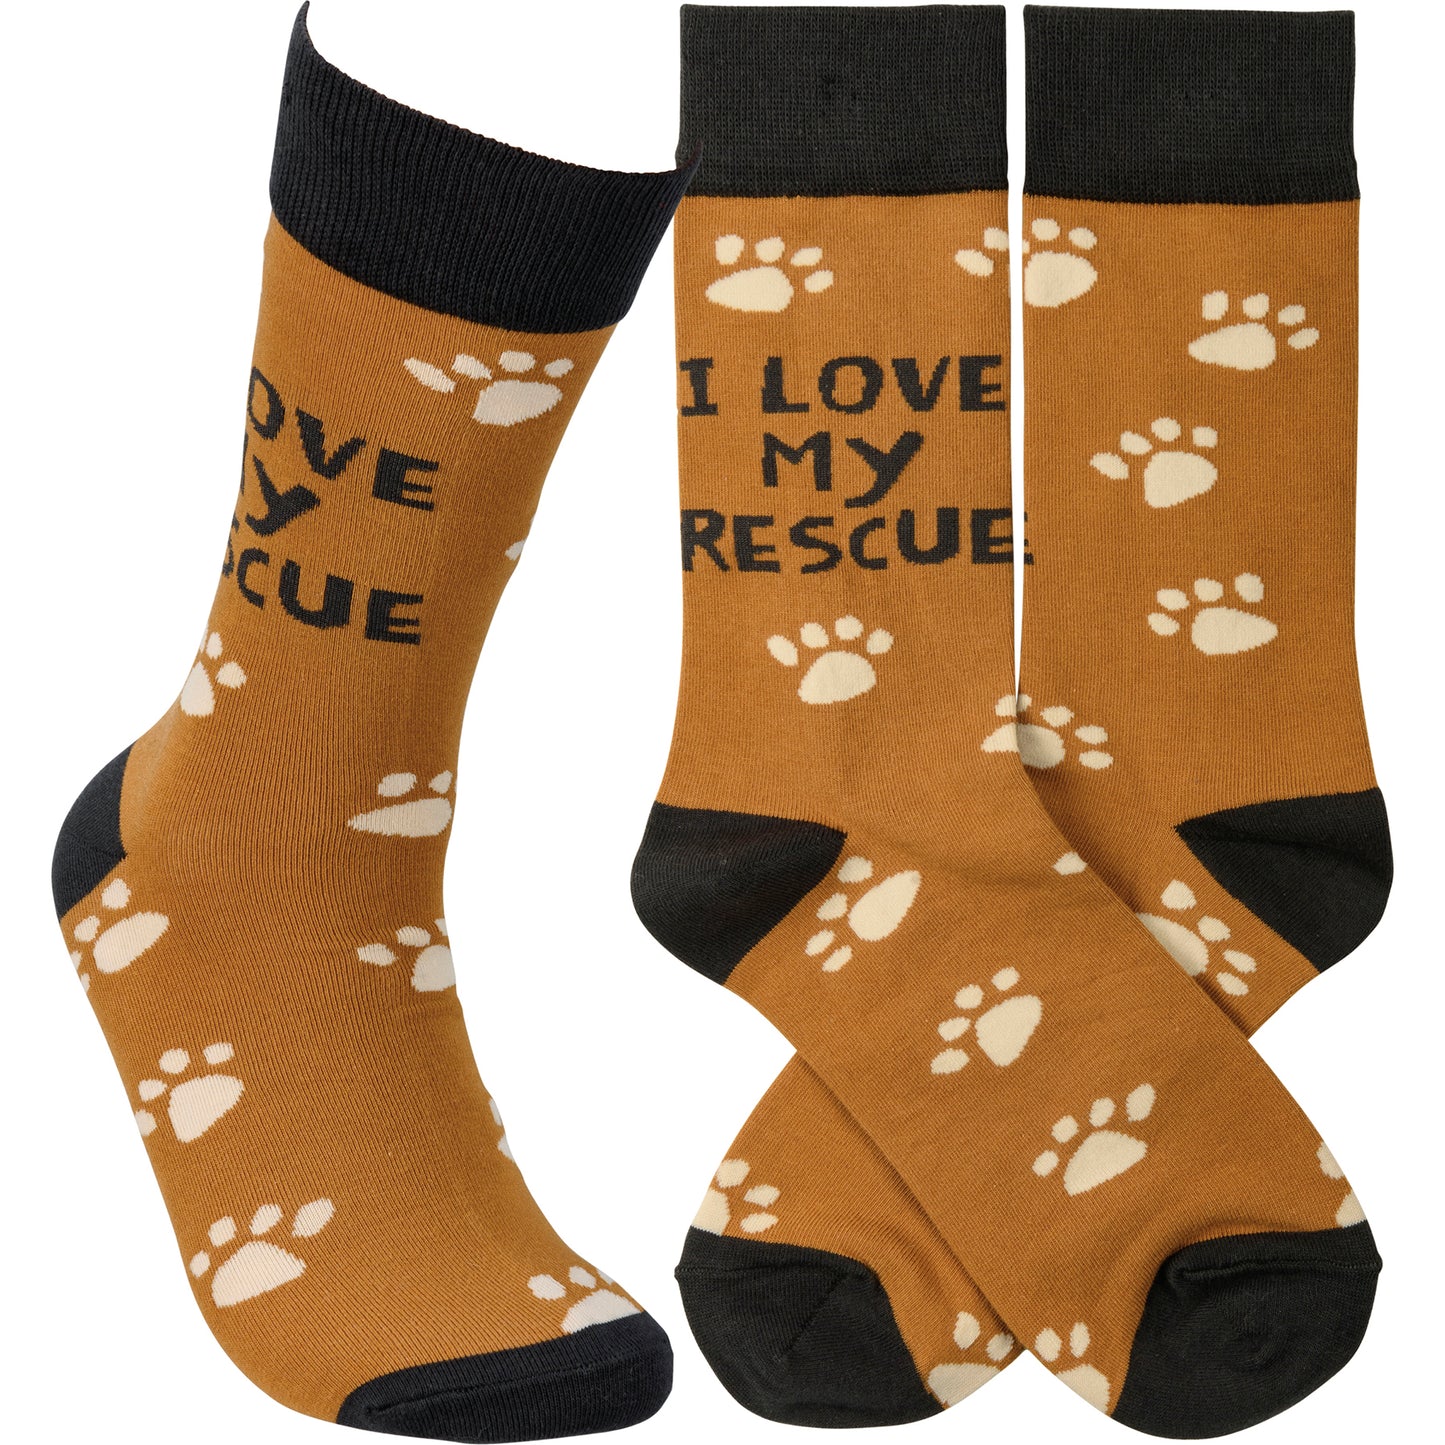 Socks - "I Love My Rescue"